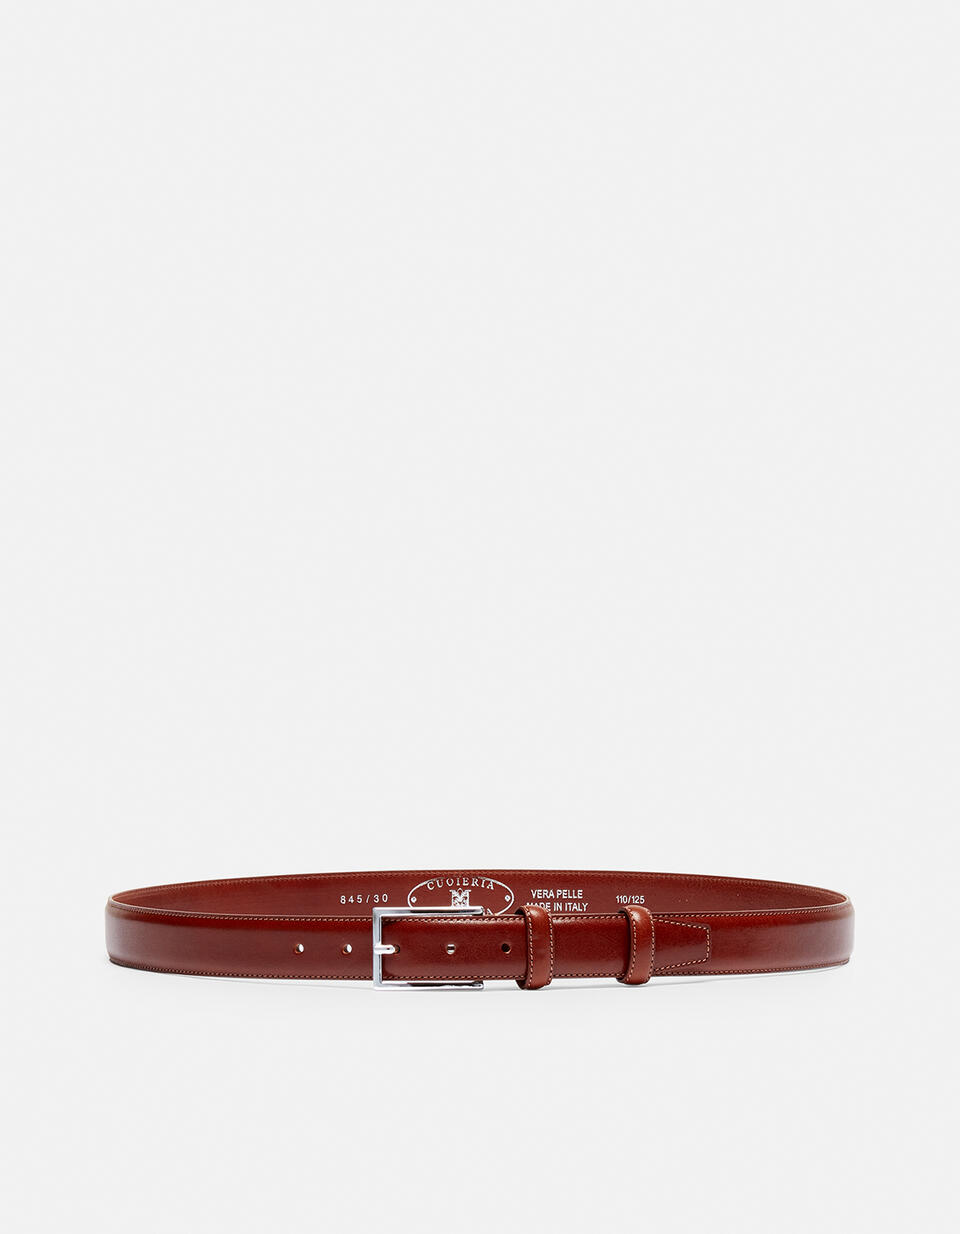 Cintura Elegante in Pelle con Punta quadra alta 3,0 cm  - Cinture Uomo - Cinture - Cuoieria Fiorentina